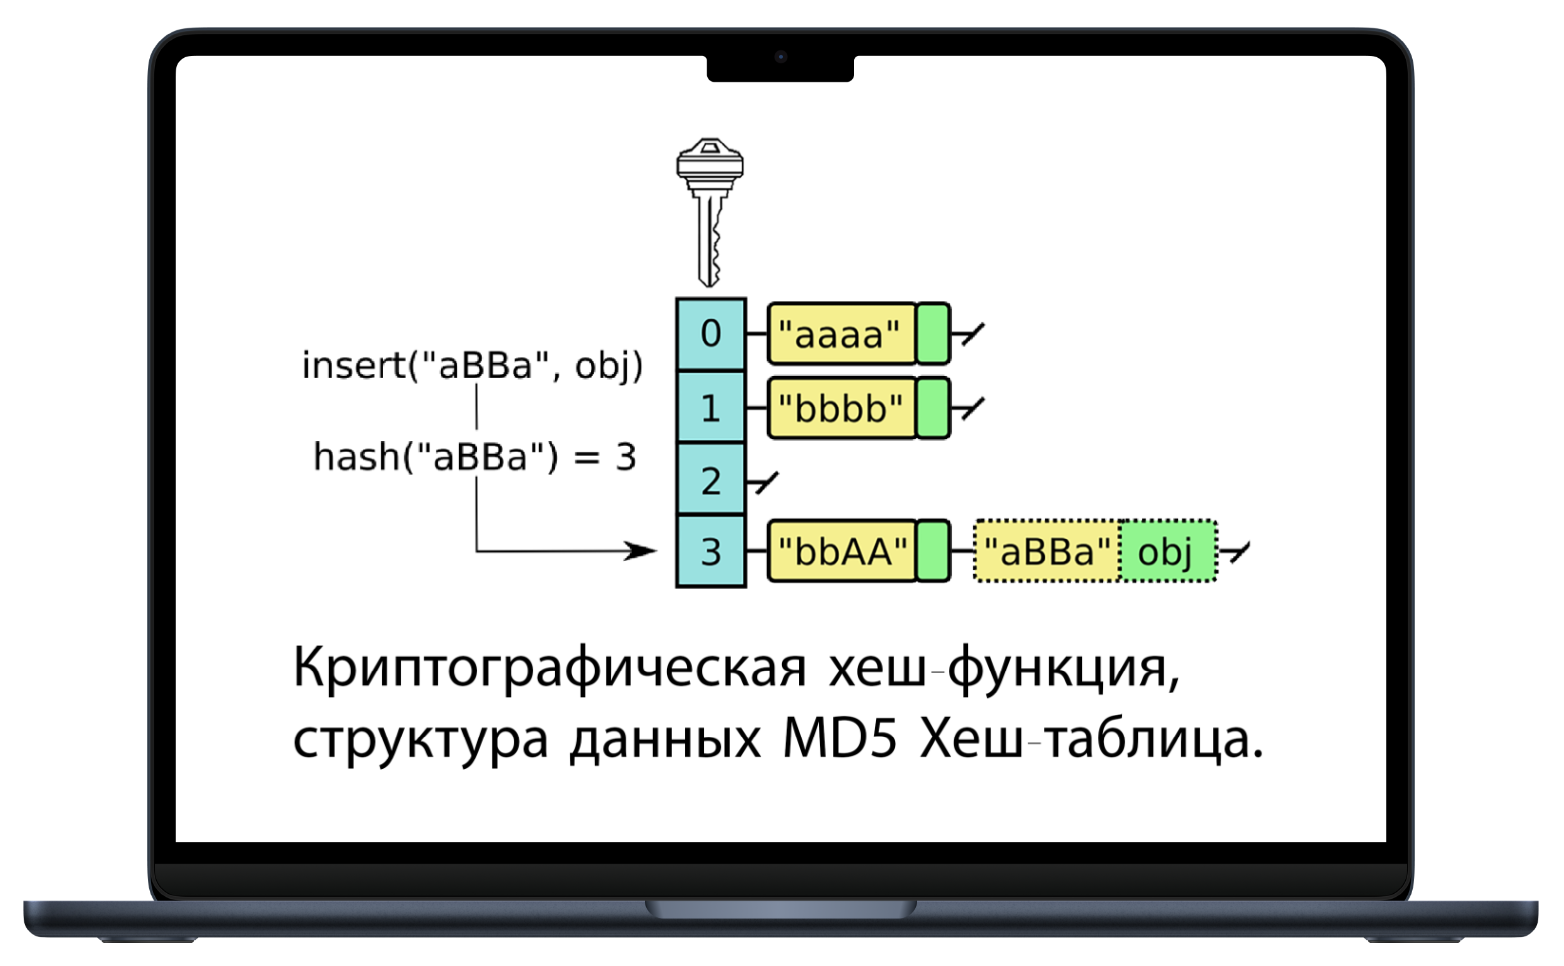 Криптографическая хеш-функция Структура данных MD5 Хеш-таблица.